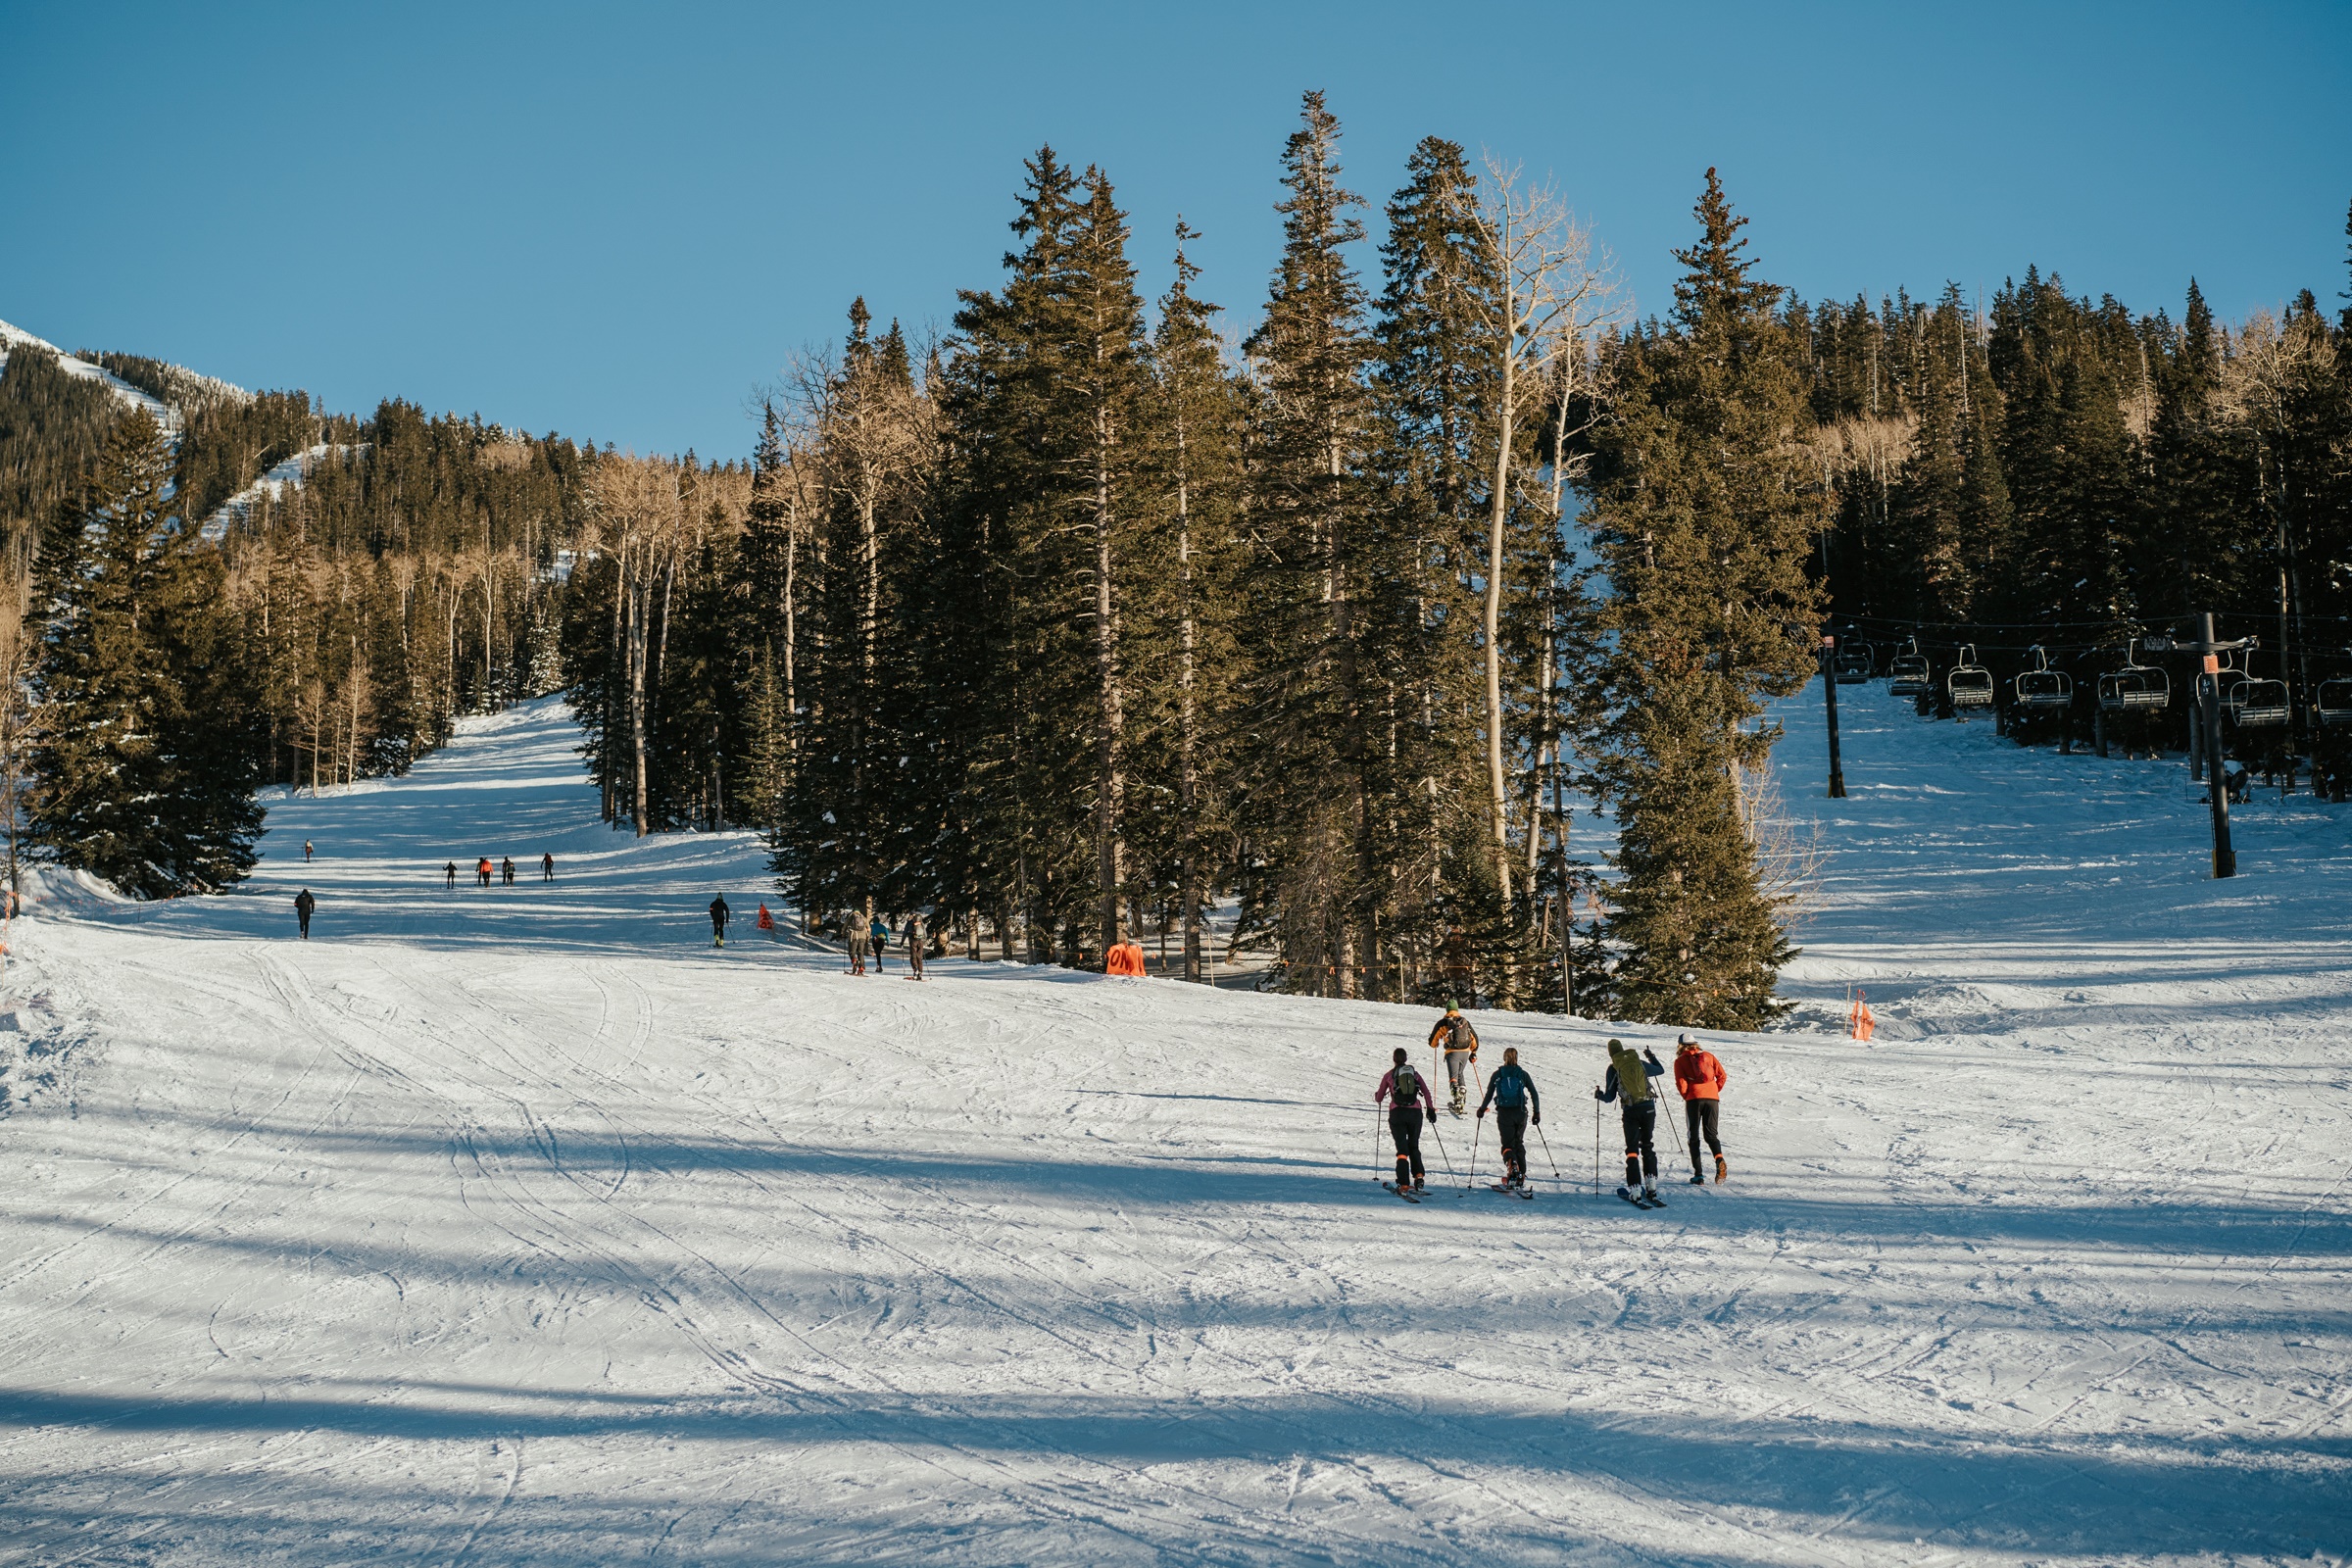 Skiiers going uphill at ski resort